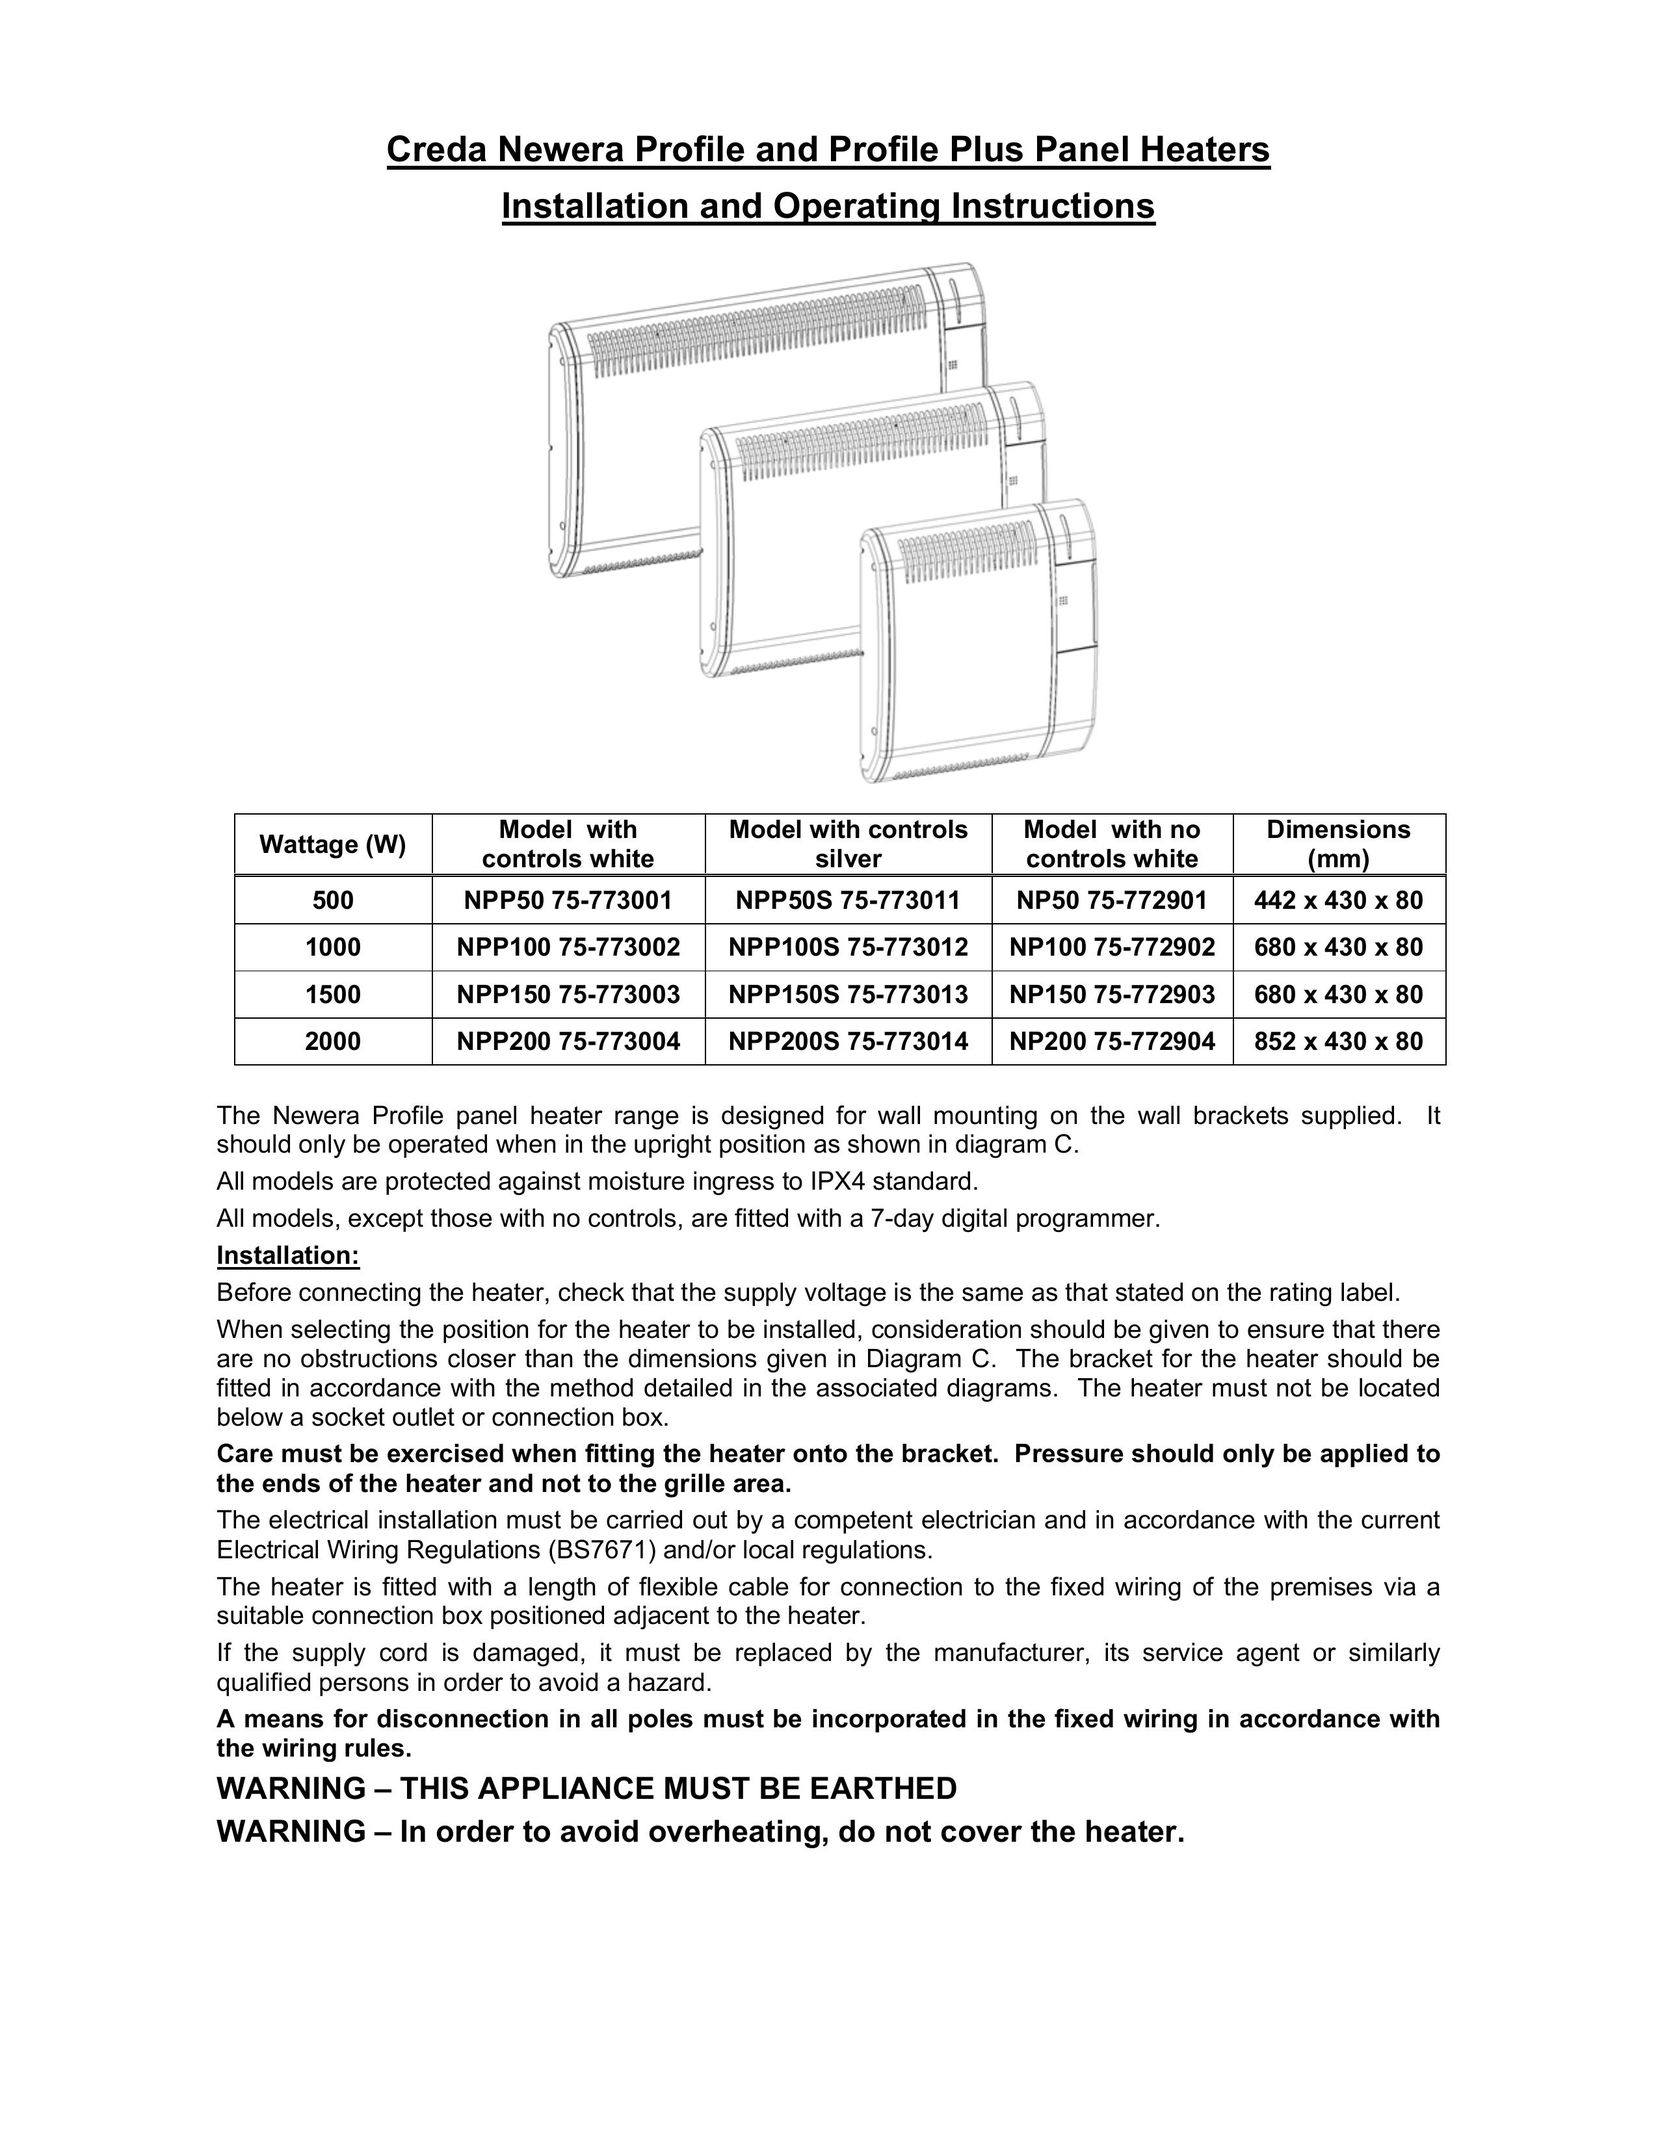 Creda NPP200 75-773004 Air Conditioner User Manual